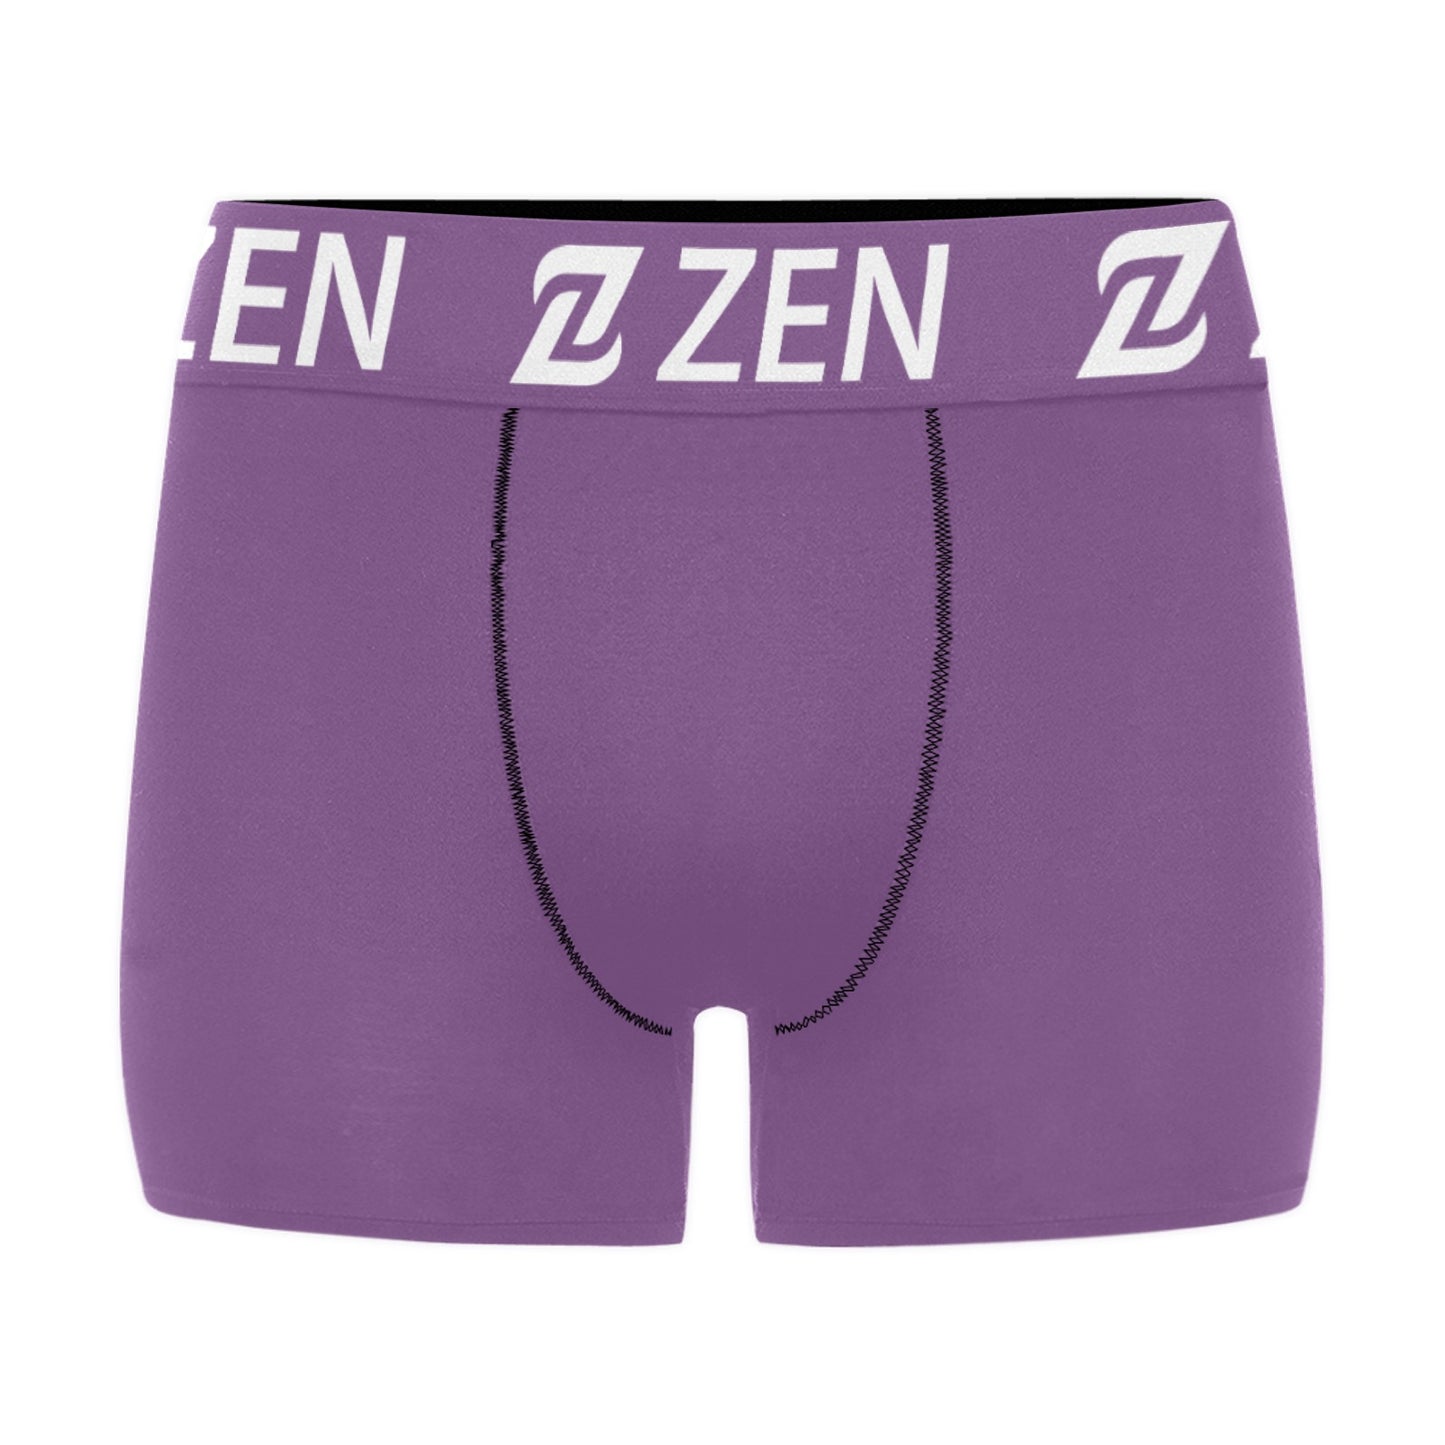 Zen Waistband - Lavender